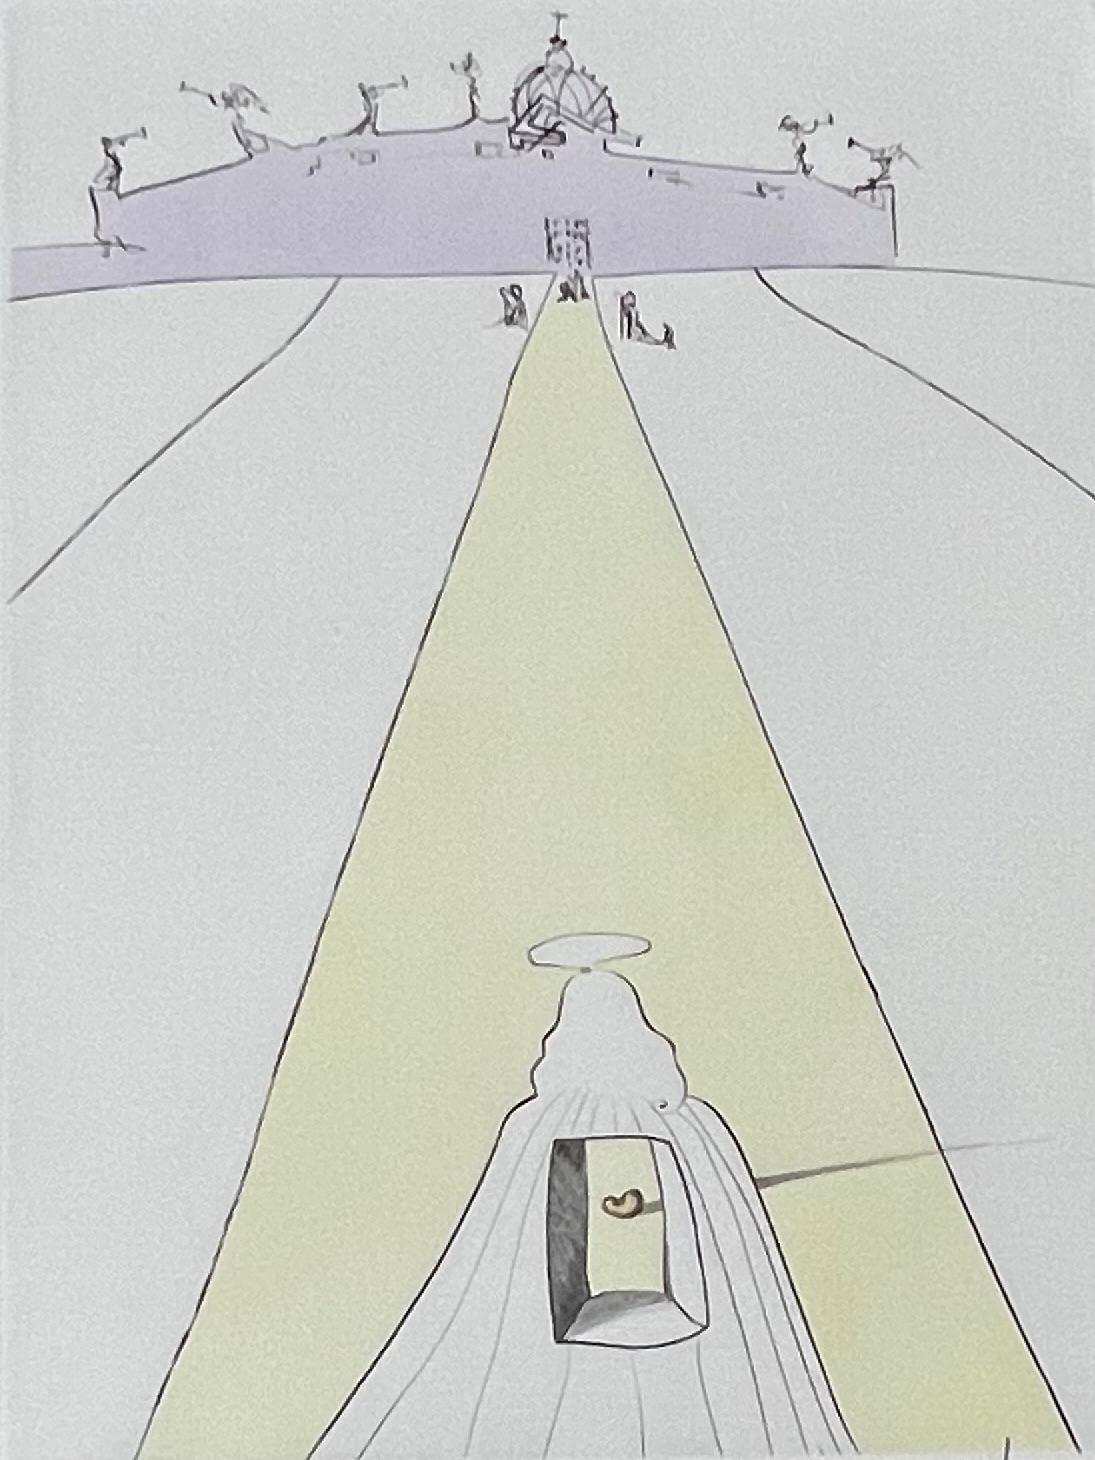 Salvador Dalí 
"Dieu, le temps, l'espace, et le Pape" (Gott, Zeit, Raum und der Papst) aus After 50 Years of Surrealism
Original-Radierung mit Handkolorierung, mit Bleistift handsigniert
1974
Bildgröße: 15 3/4 x 11 7/8 Zoll.
Papierformat: 26 x 19